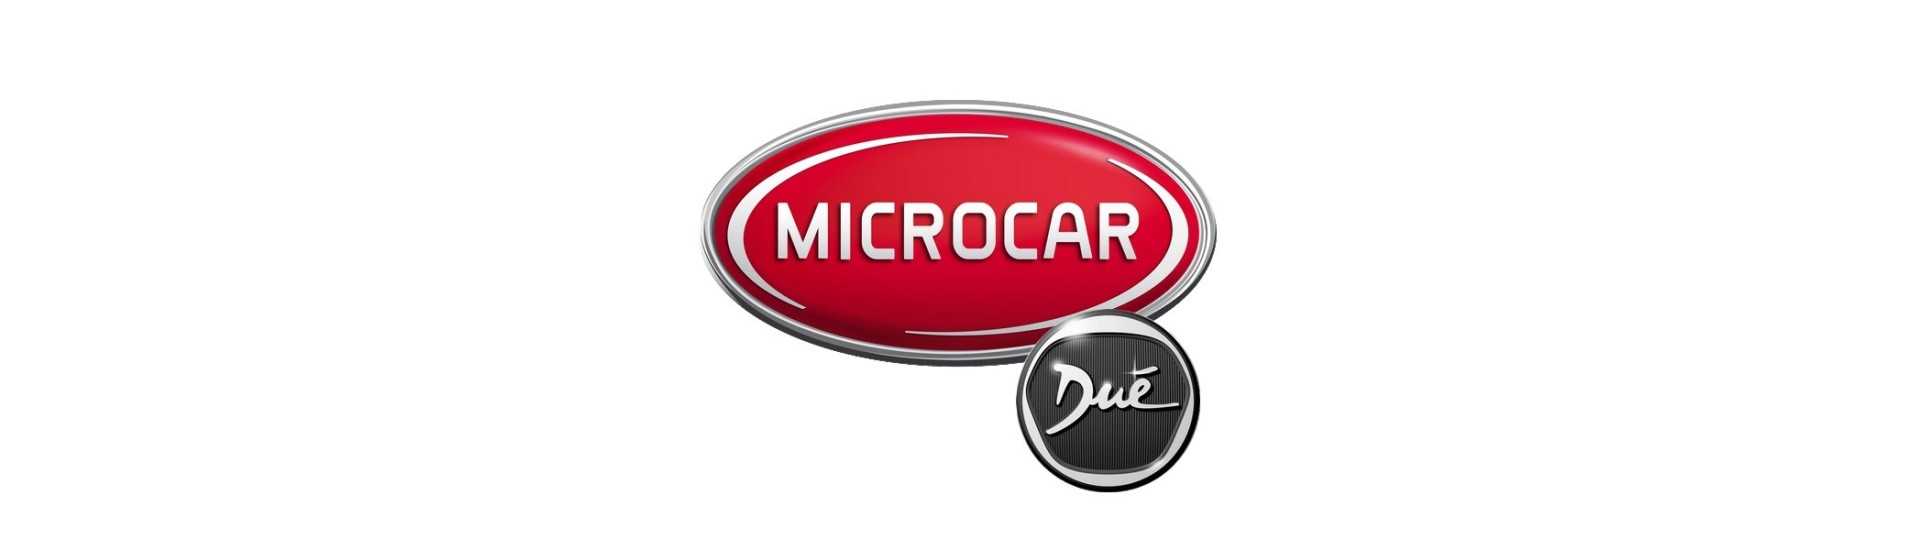 Potenciômetro ao melhor preço para o carro sem uma permissão Microcar Dué